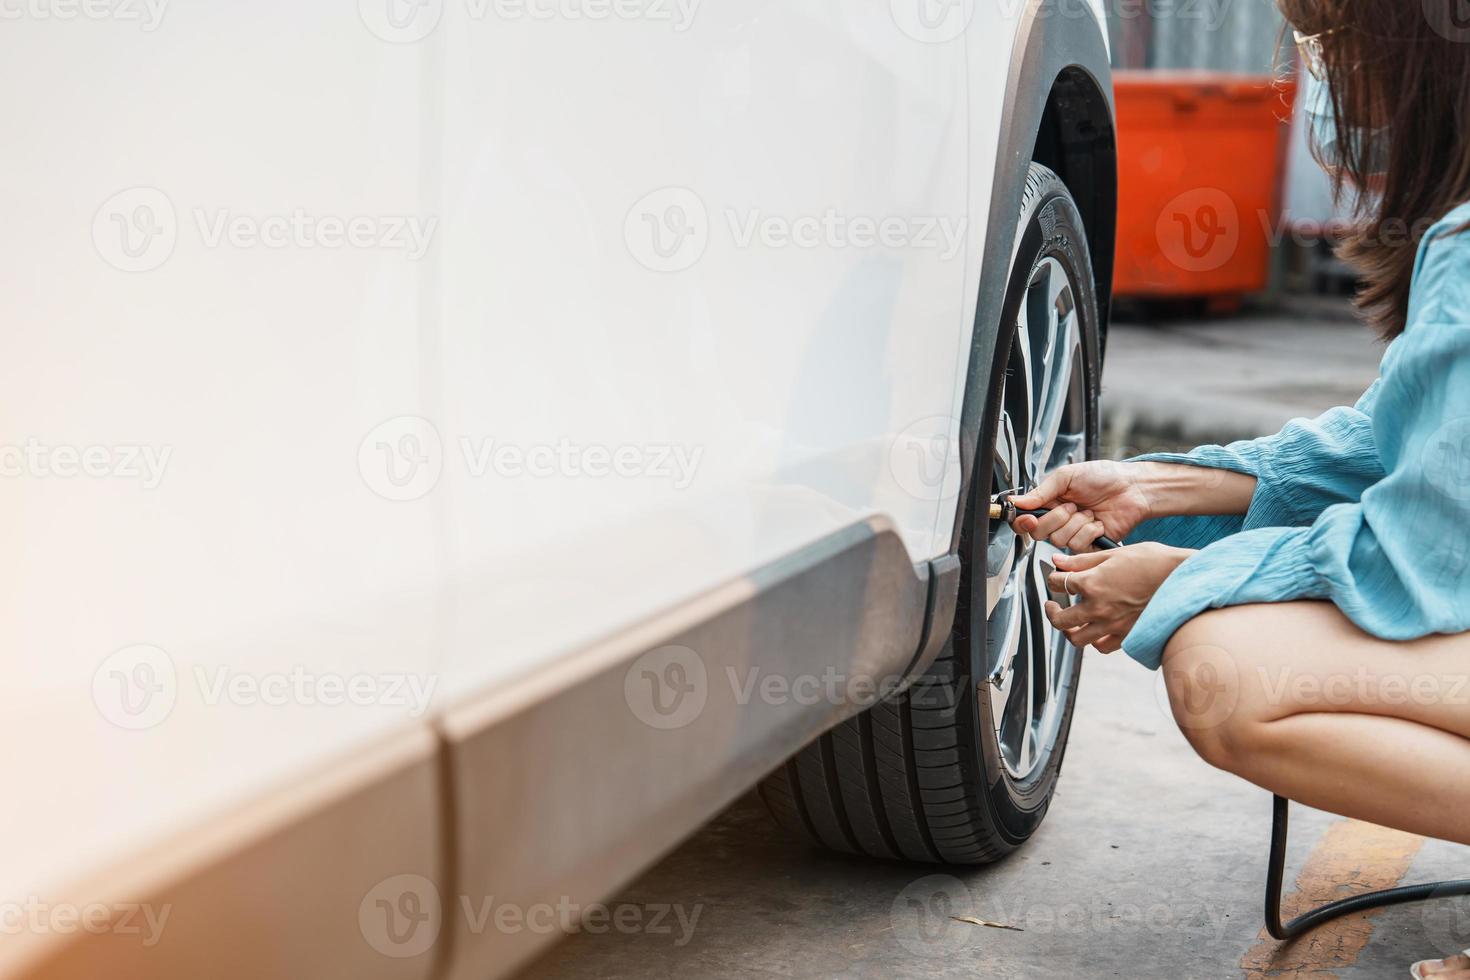 donna conducente che gonfia a mano i pneumatici del veicolo, rimuovendo il tappo di azoto della valvola del pneumatico per controllare la pressione dell'aria e riempire l'aria sulla ruota dell'auto alla stazione di servizio. self service, manutenzione e sicurezza foto